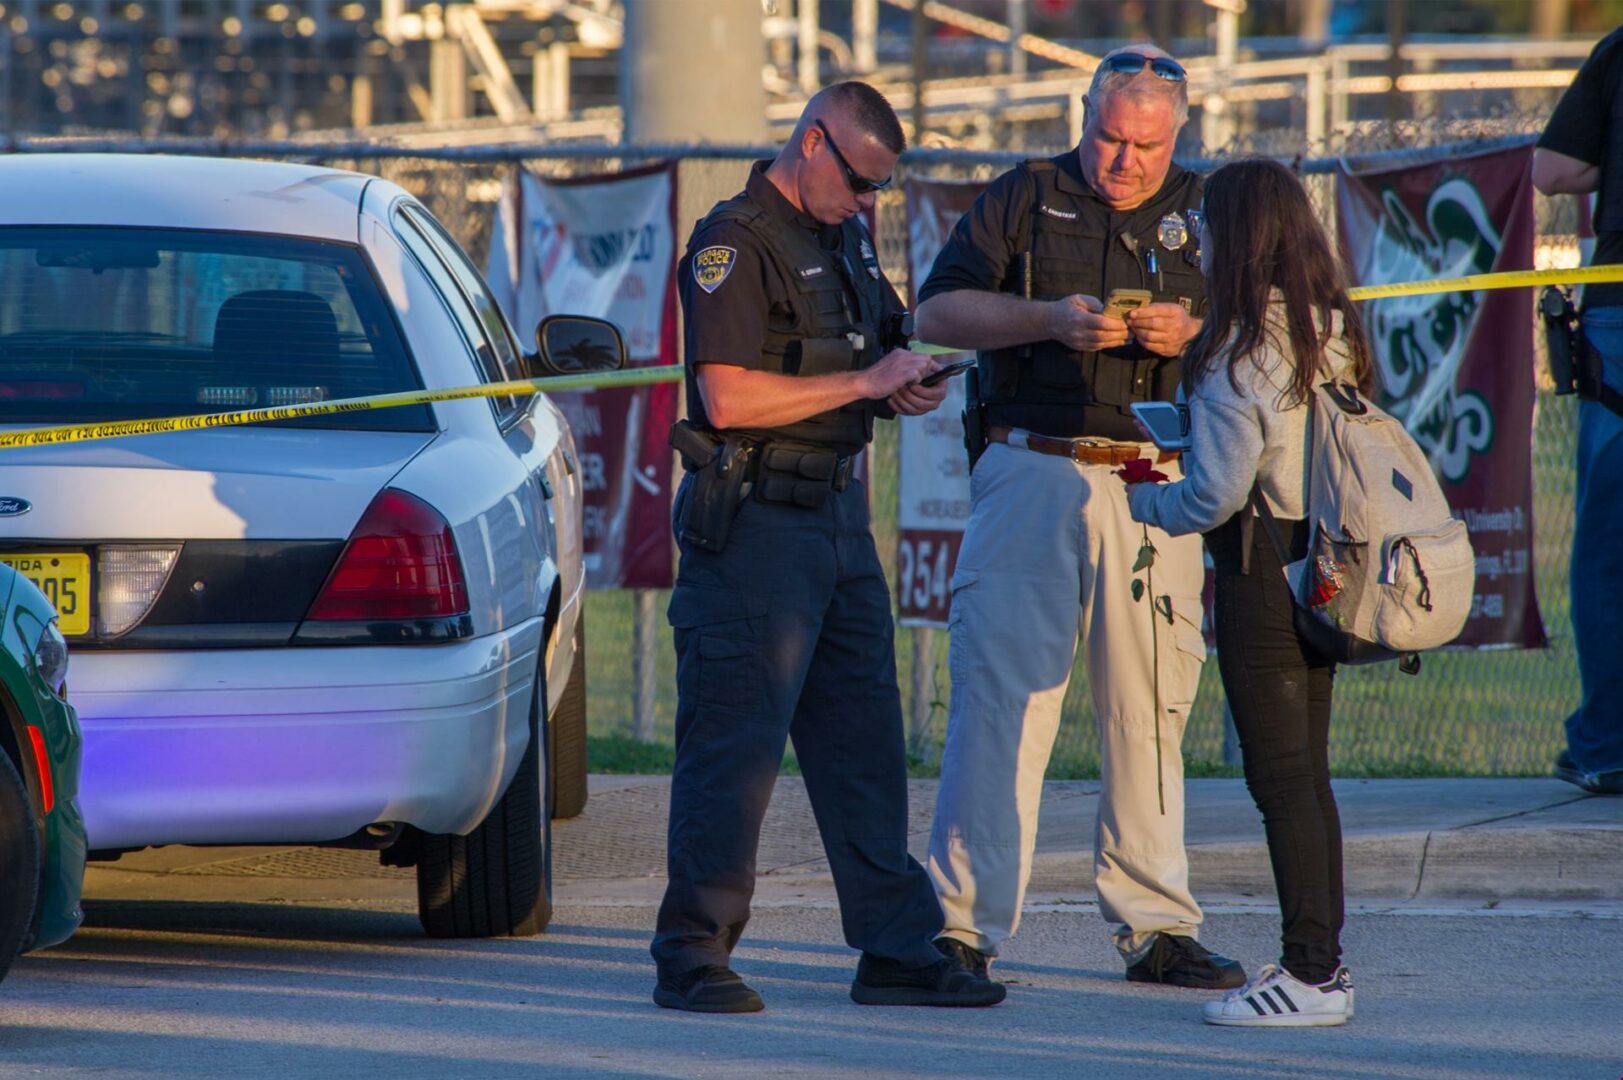 Investigan la muerte de una niña de 13 años en un tiroteo en Florida